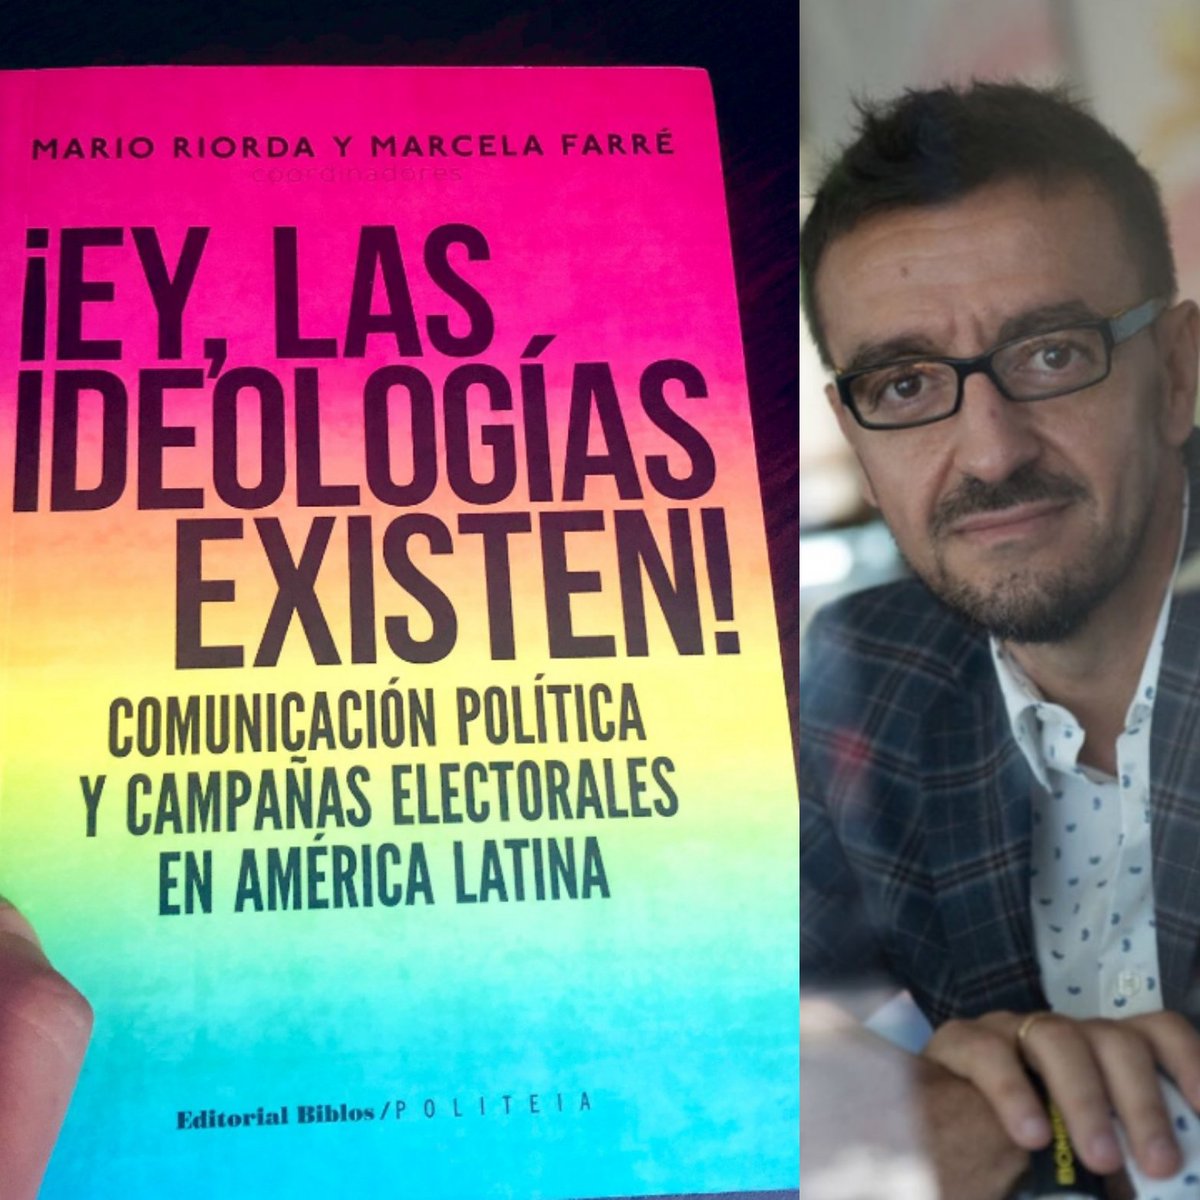 #ComunicaciónPolítica Lectura recomendada: ¡Ey, las ideologías existen ! por @marioriorda & @MarceFarre .